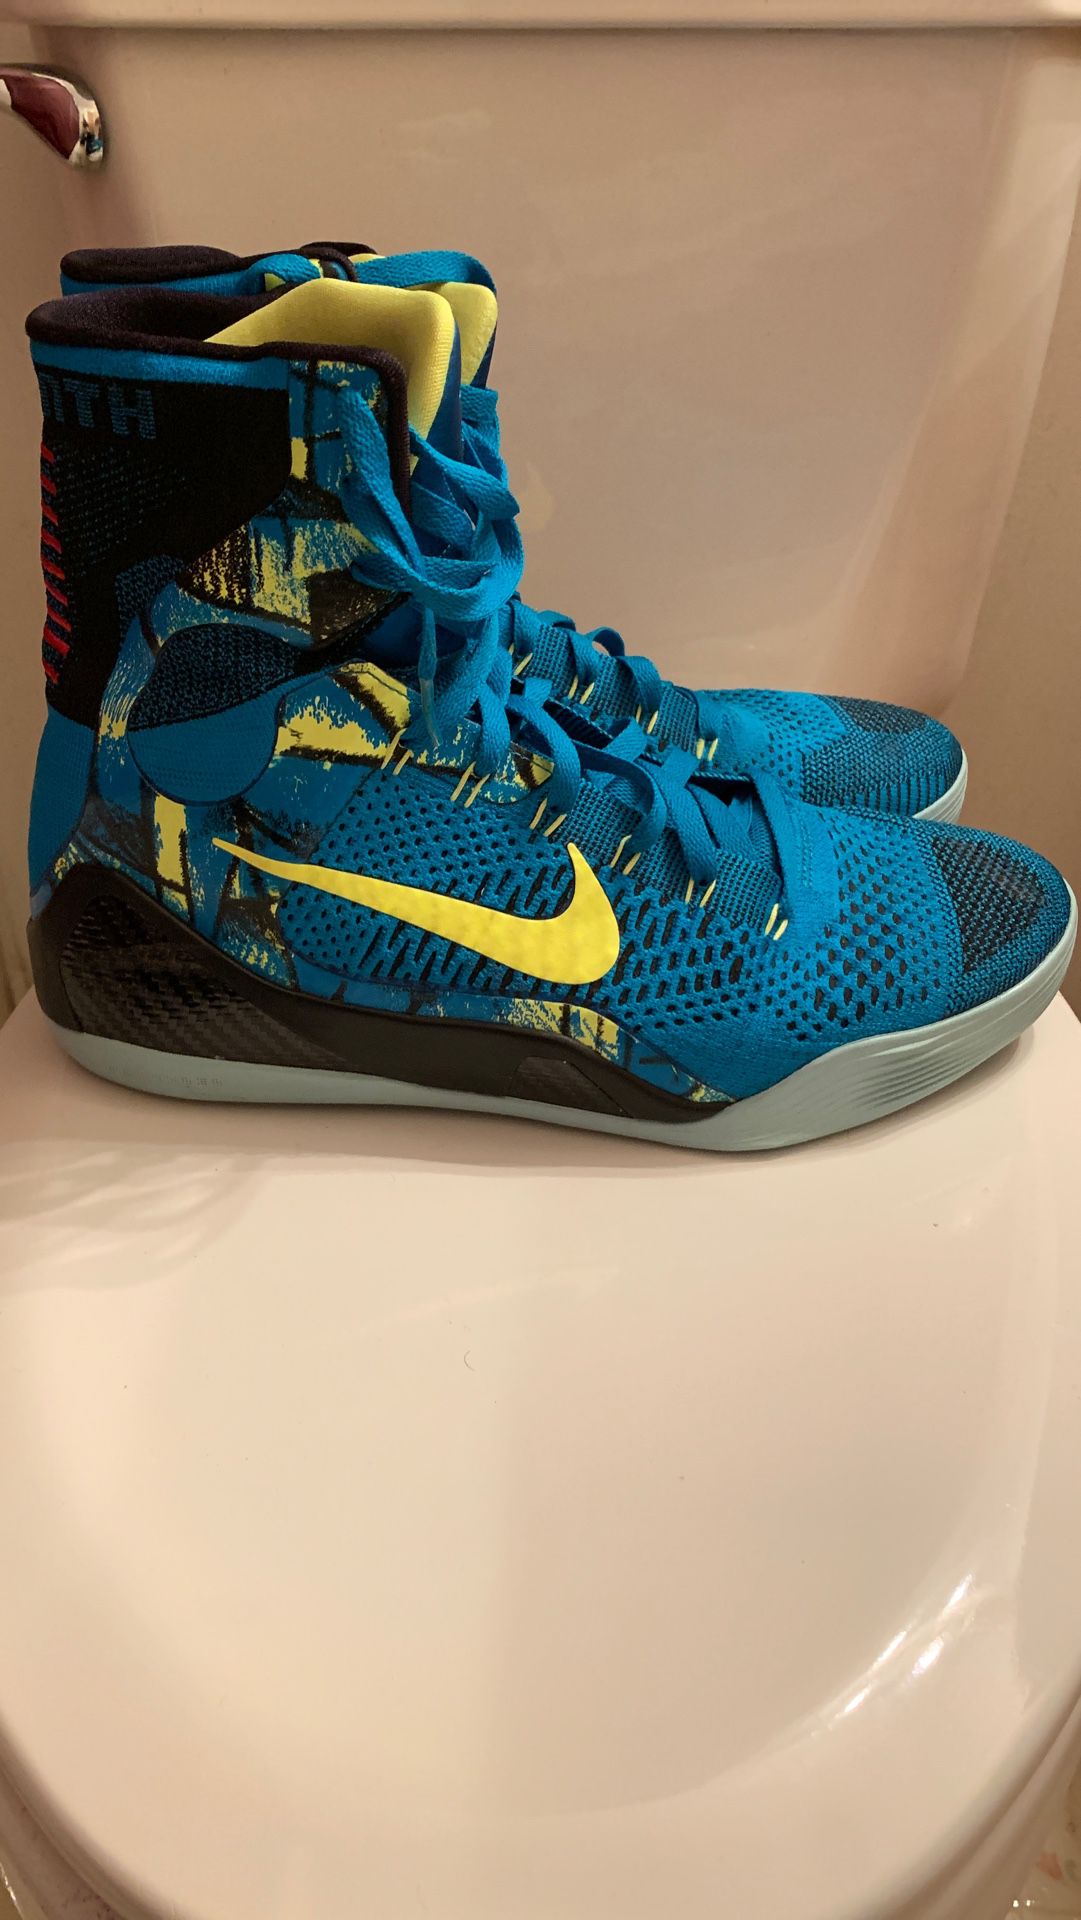 Men’s Nike Kobe 9 Elite “Perspective” Size 13